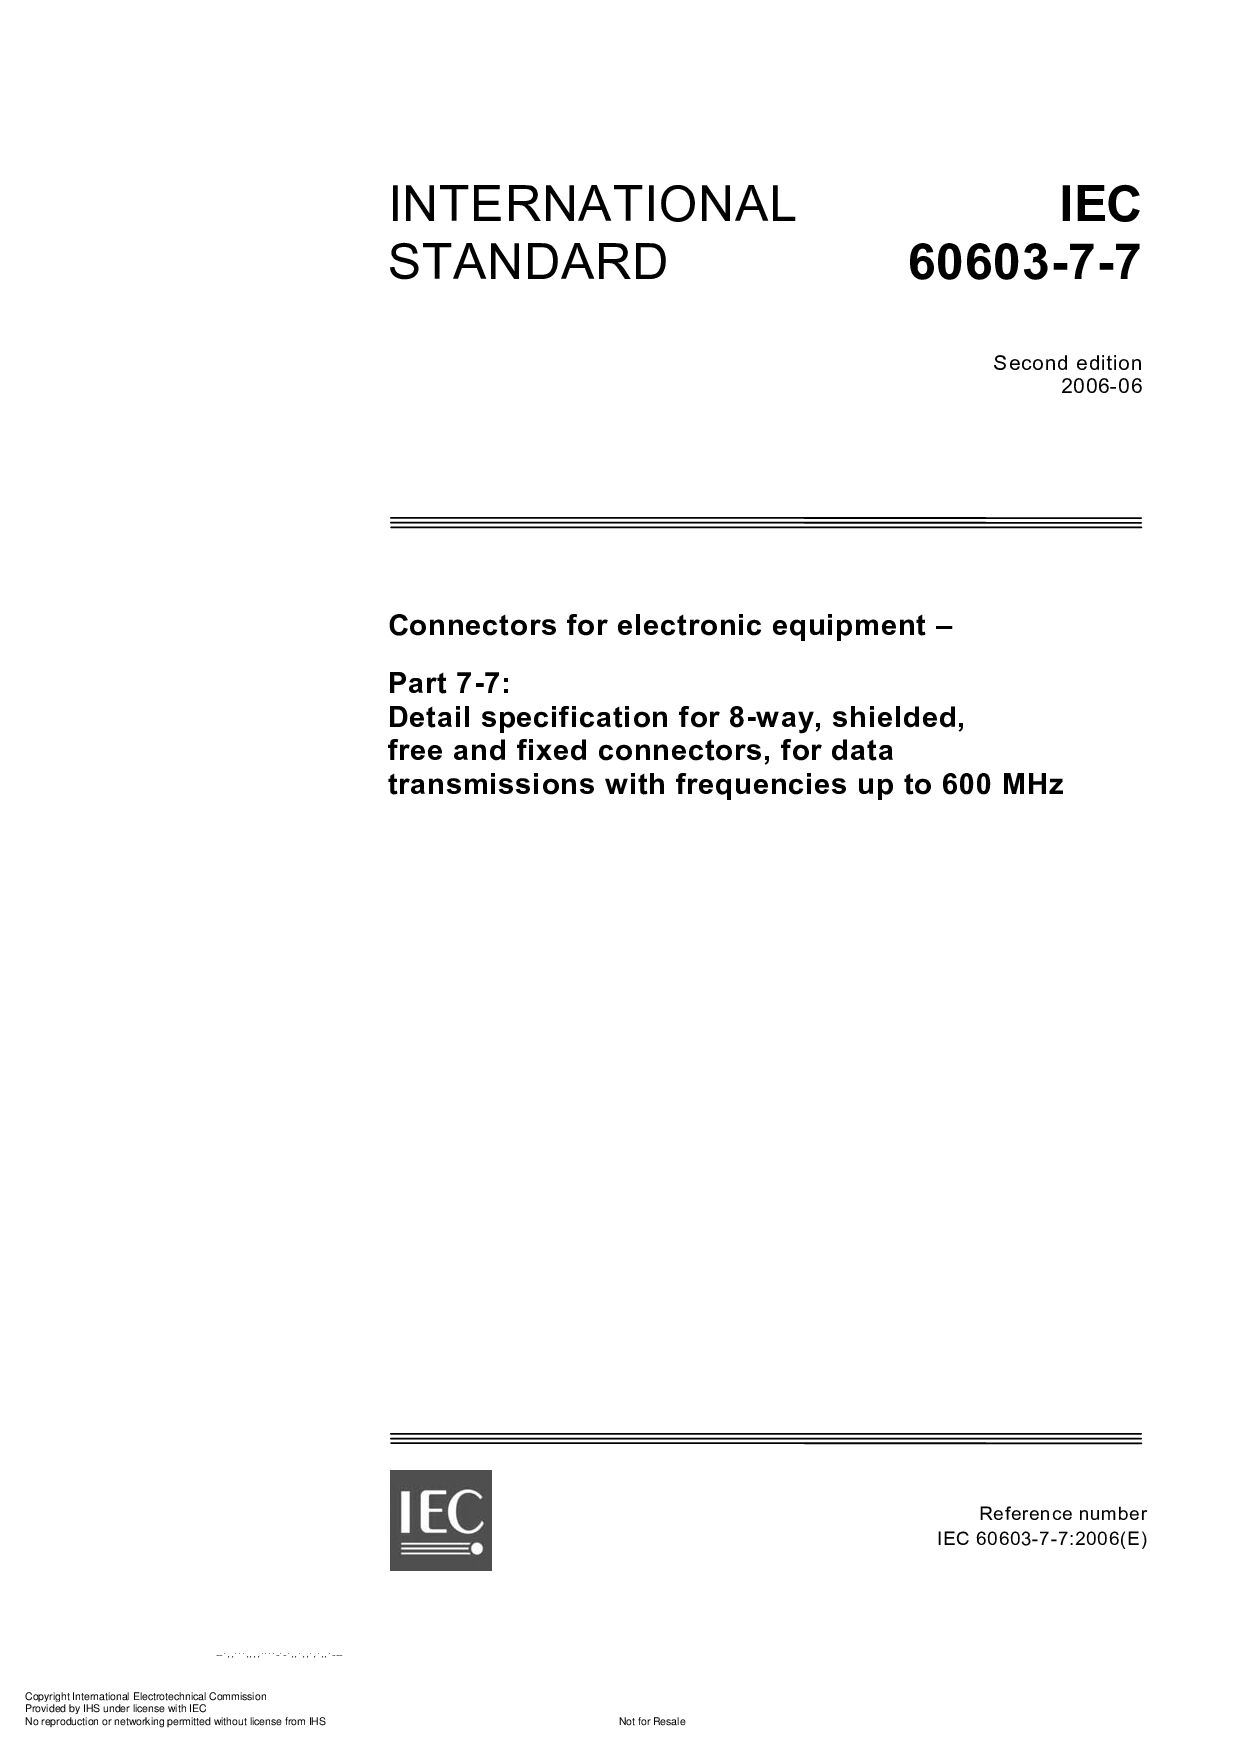 IEC 60603-7-7:2006